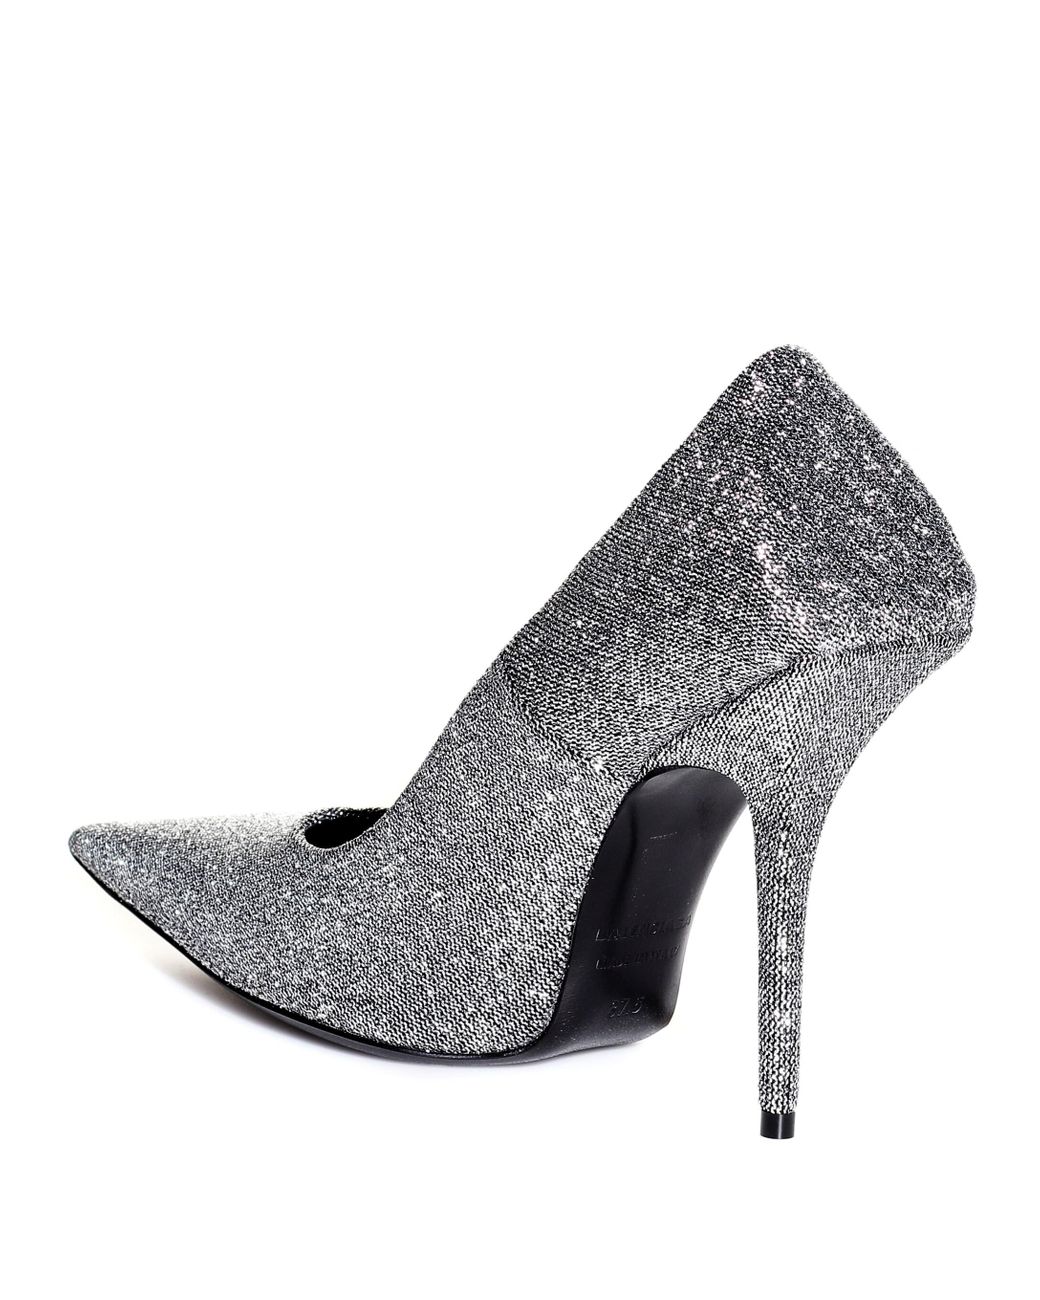 balenciaga sparkly heels